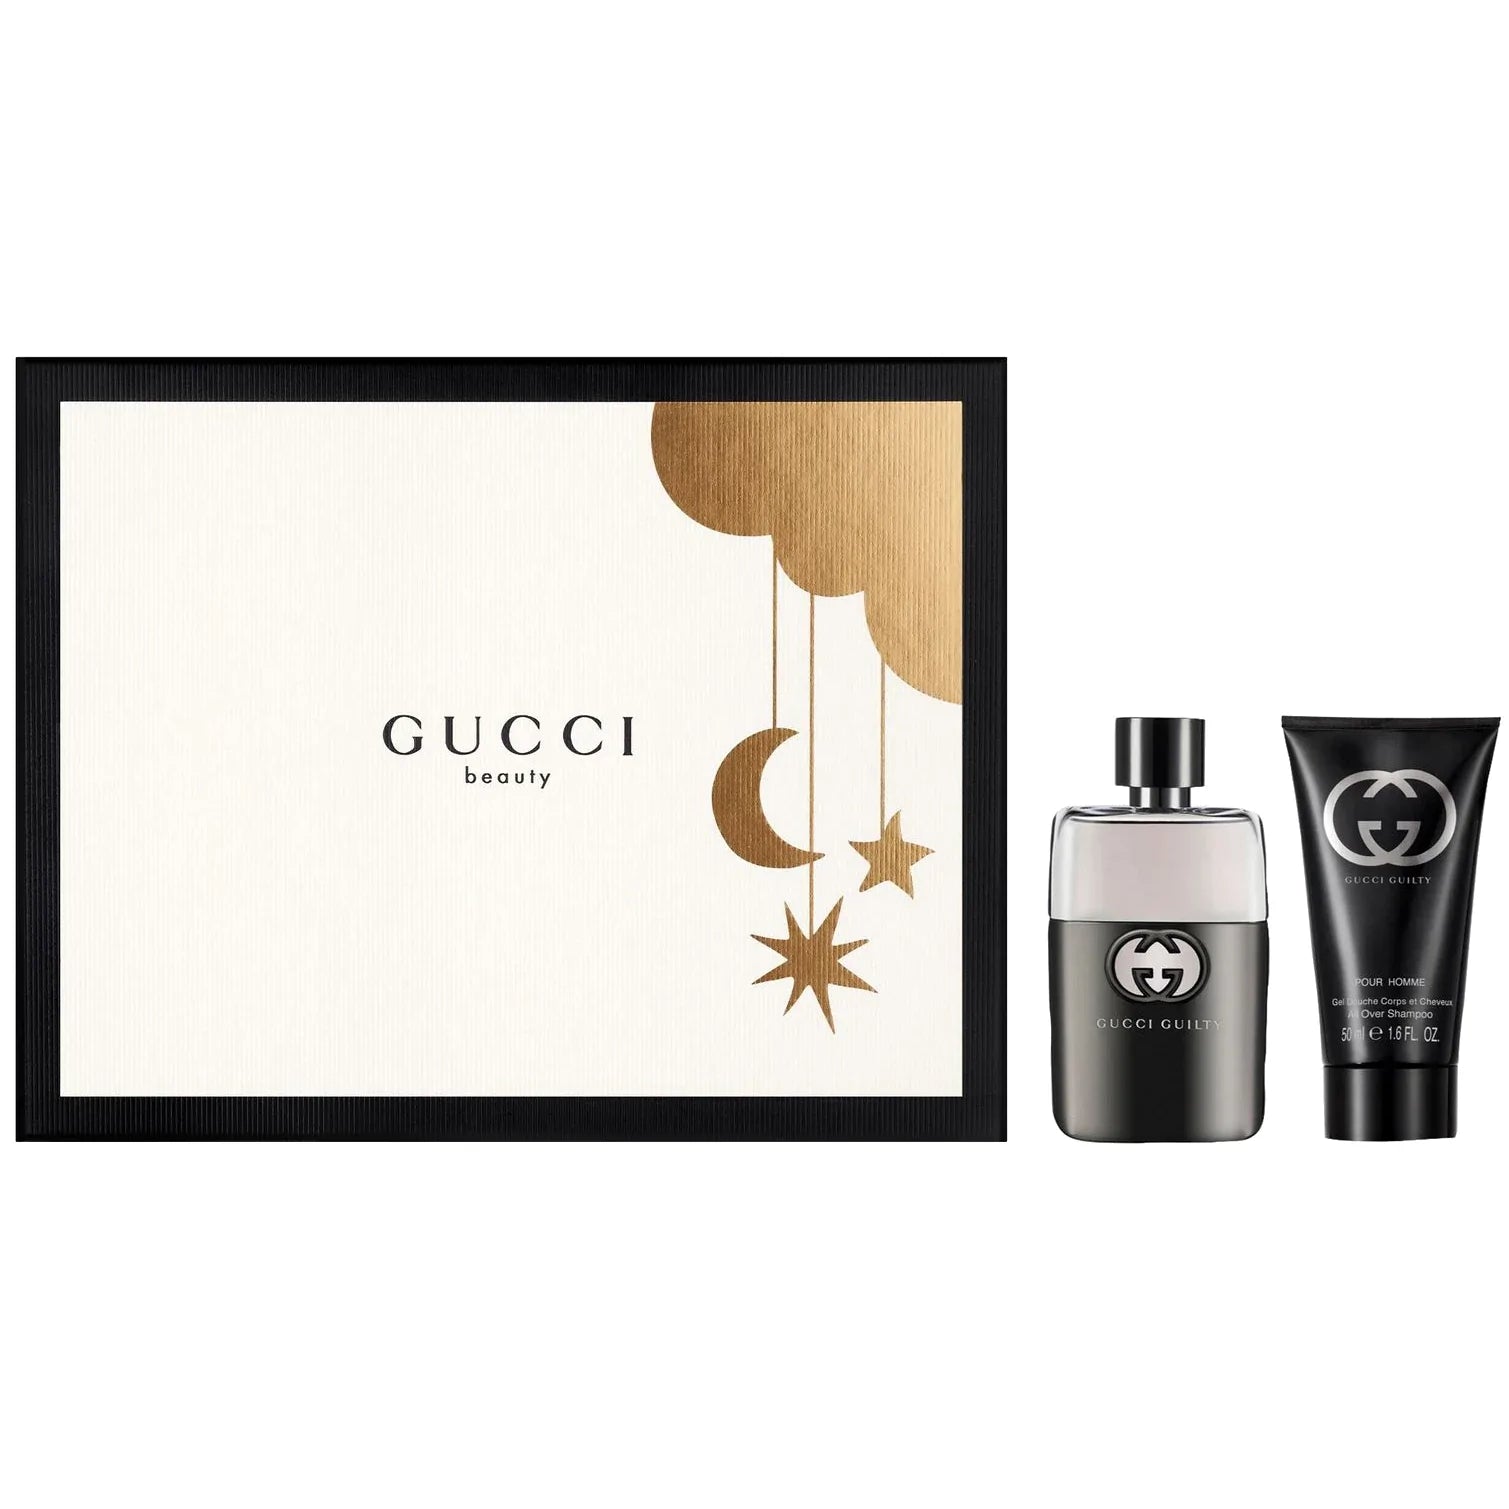 Fragrance Gucci Set De de Toilette Gift – Eau Guilty Flor Pour Homme